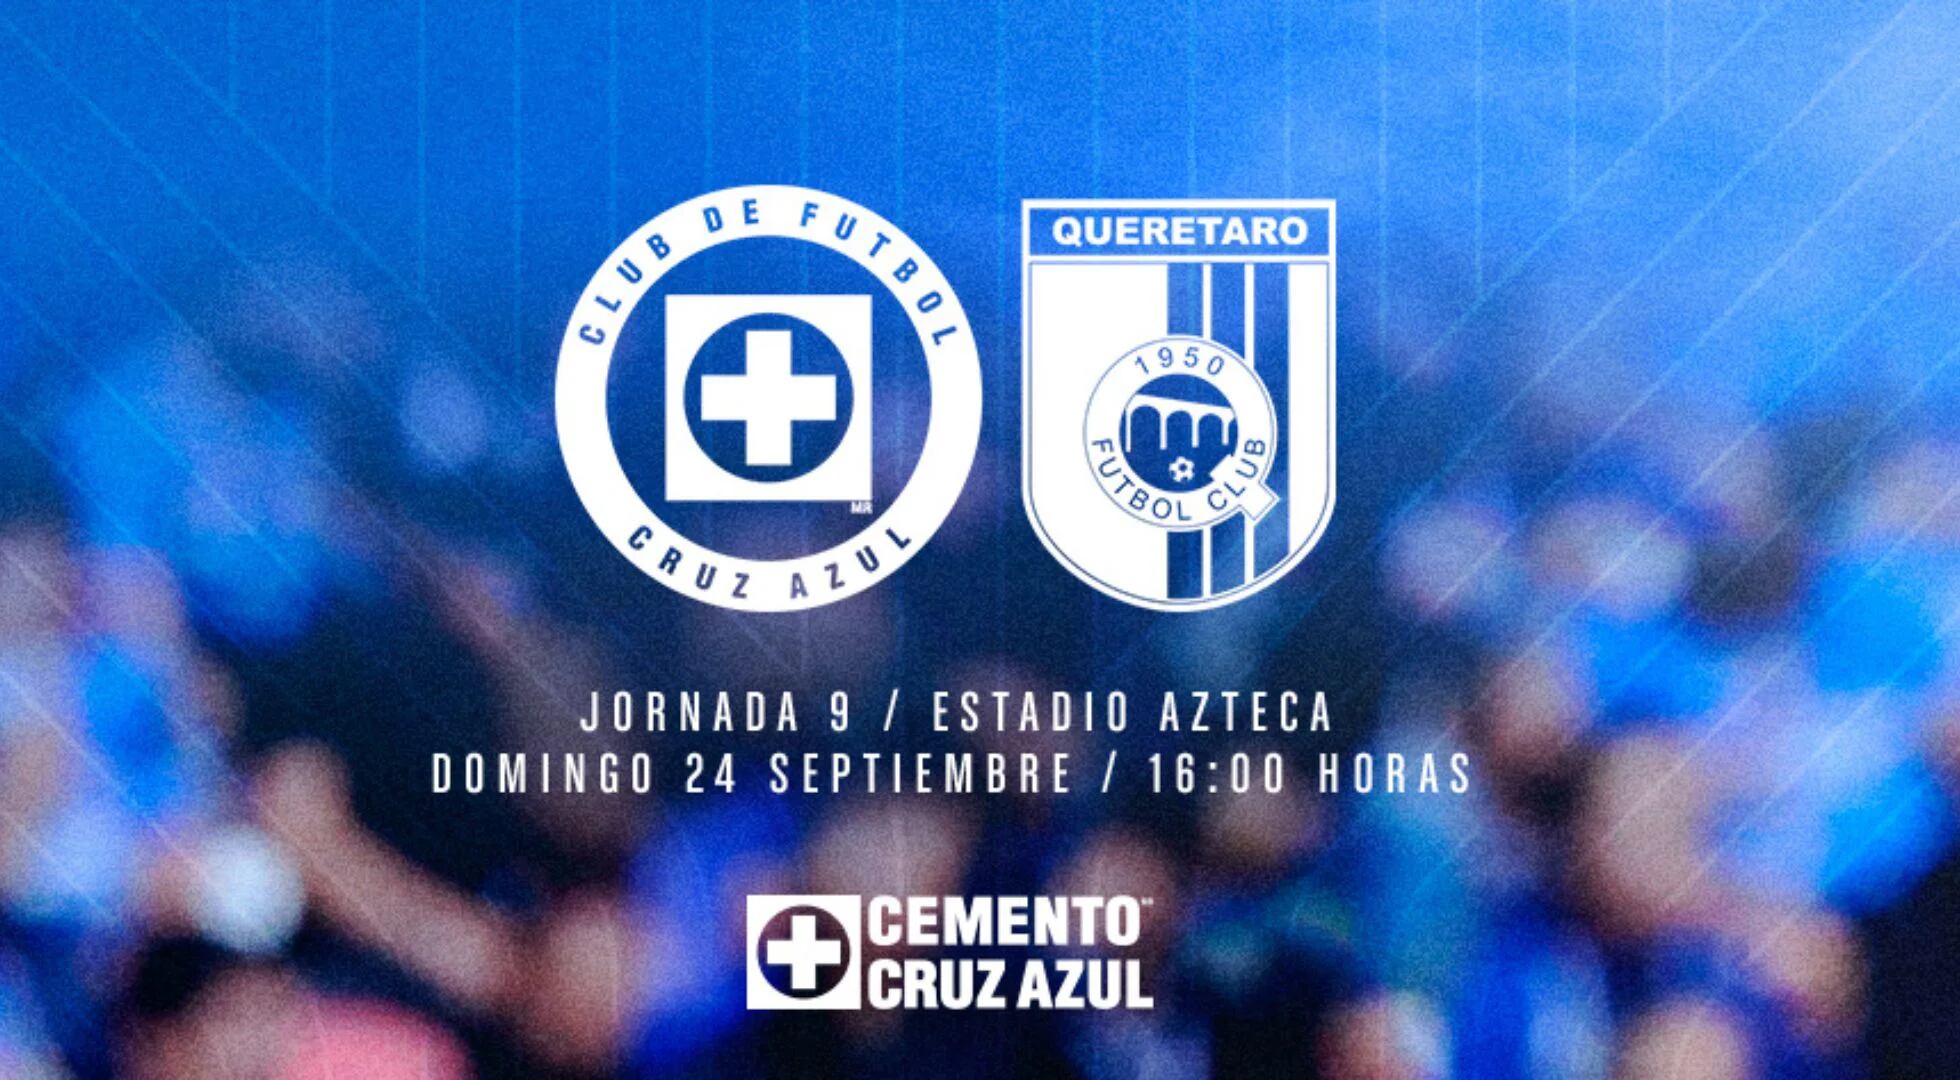 Cruz Azul ofrece boletos desde 75 pesos para su partido vs Querétaro en el Estadio Azteca